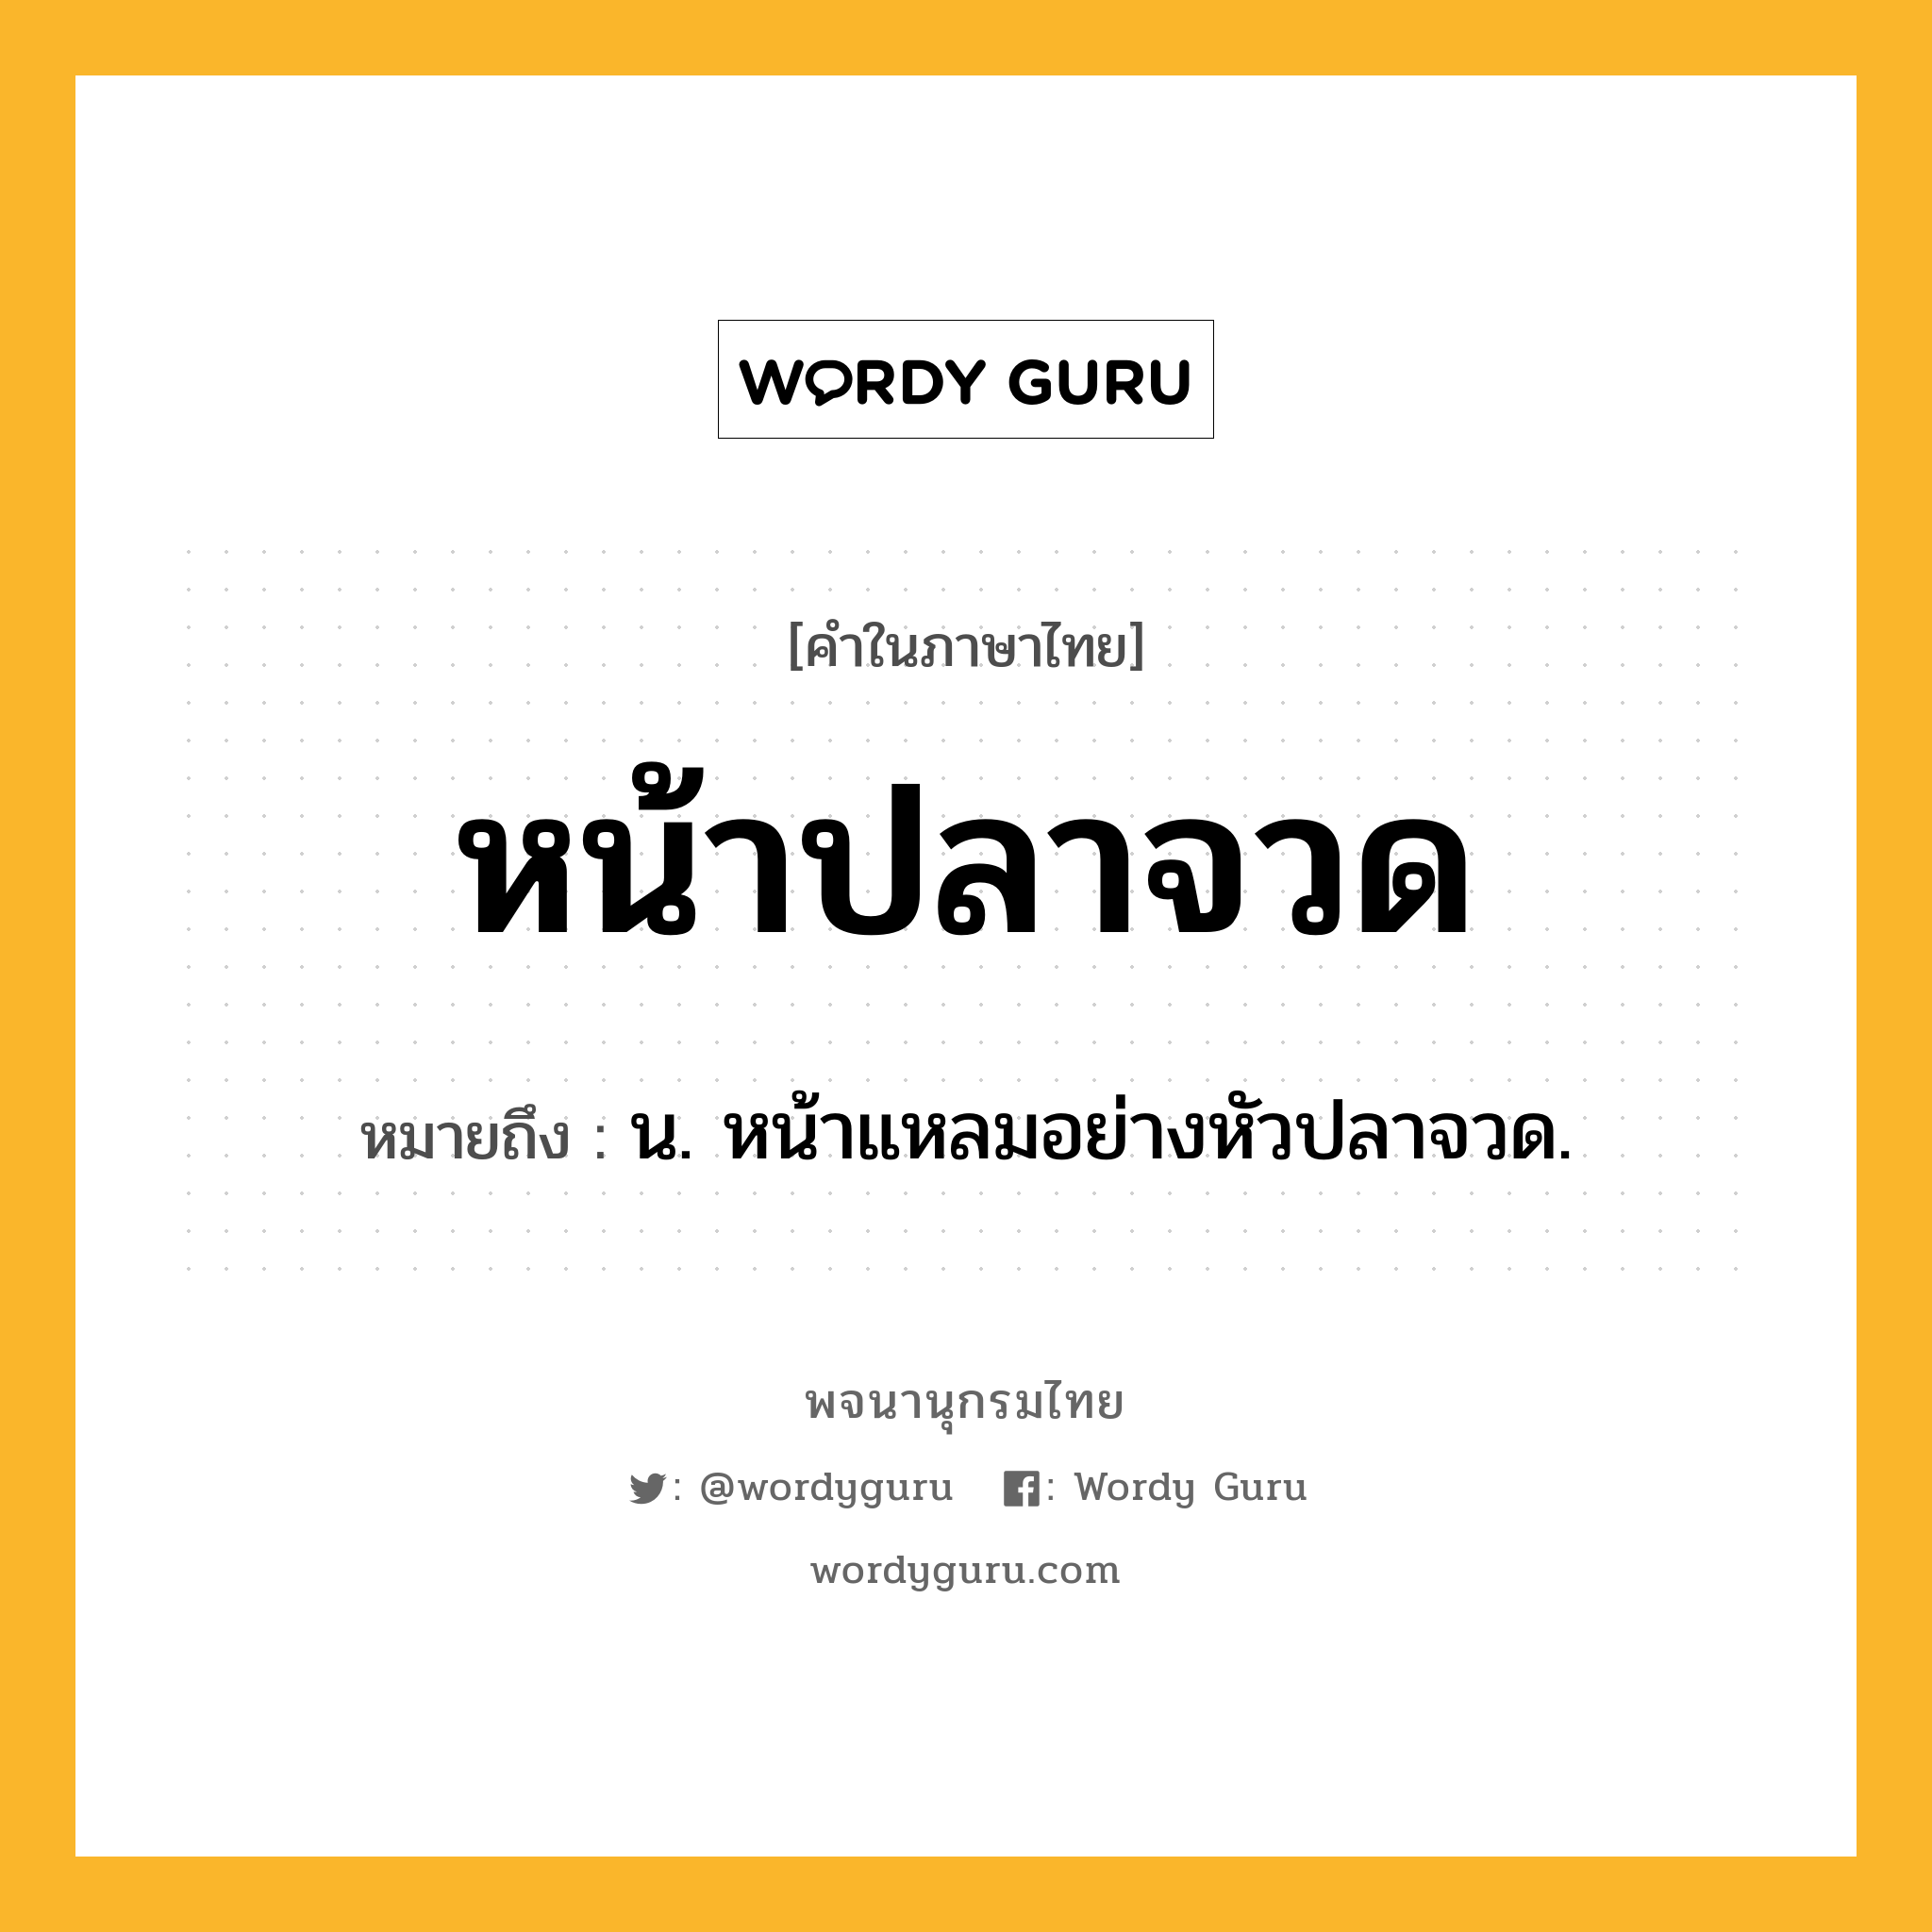 หน้าปลาจวด หมายถึงอะไร?, คำในภาษาไทย หน้าปลาจวด หมายถึง น. หน้าแหลมอย่างหัวปลาจวด.